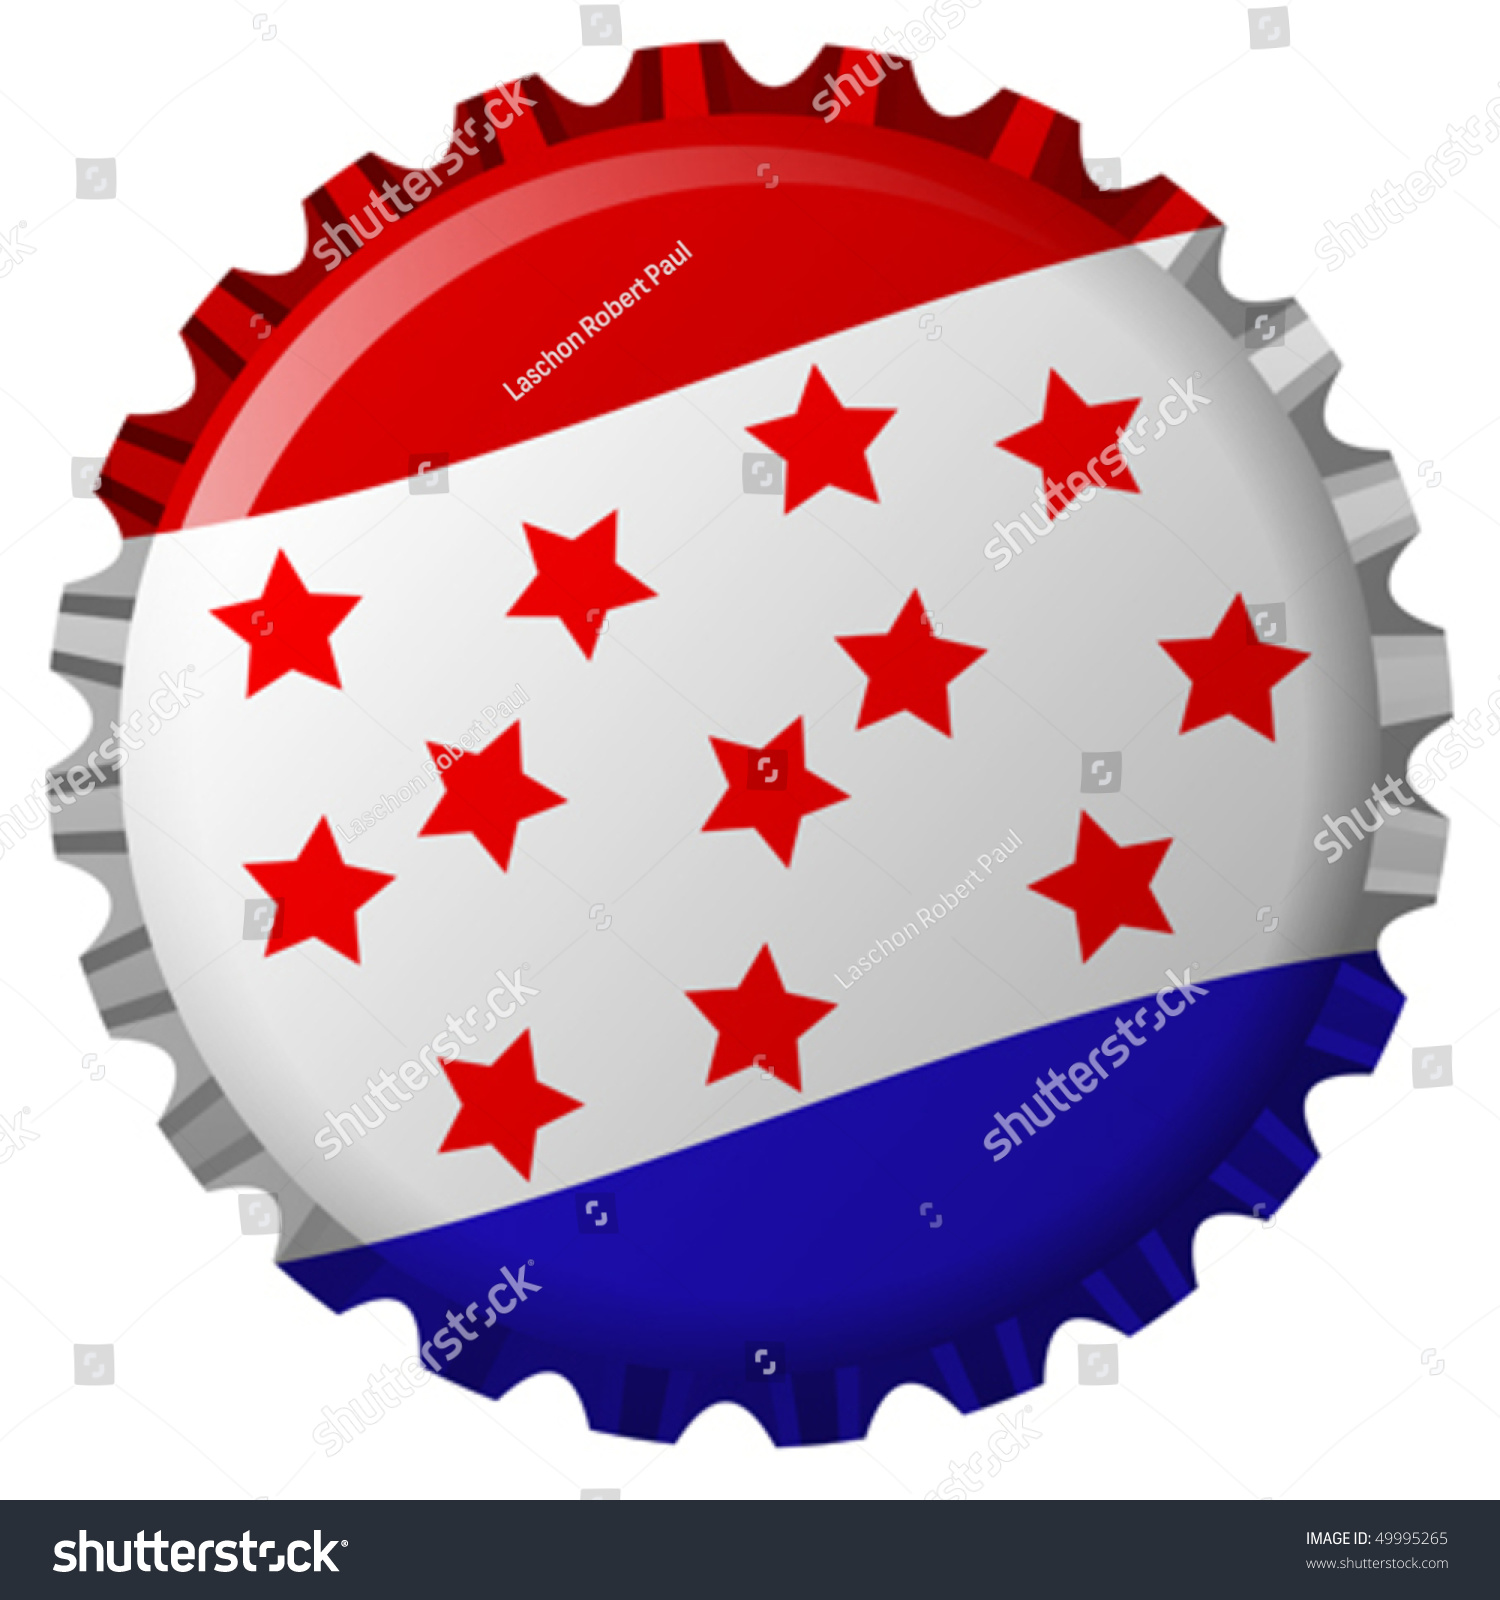 bottle cap united states